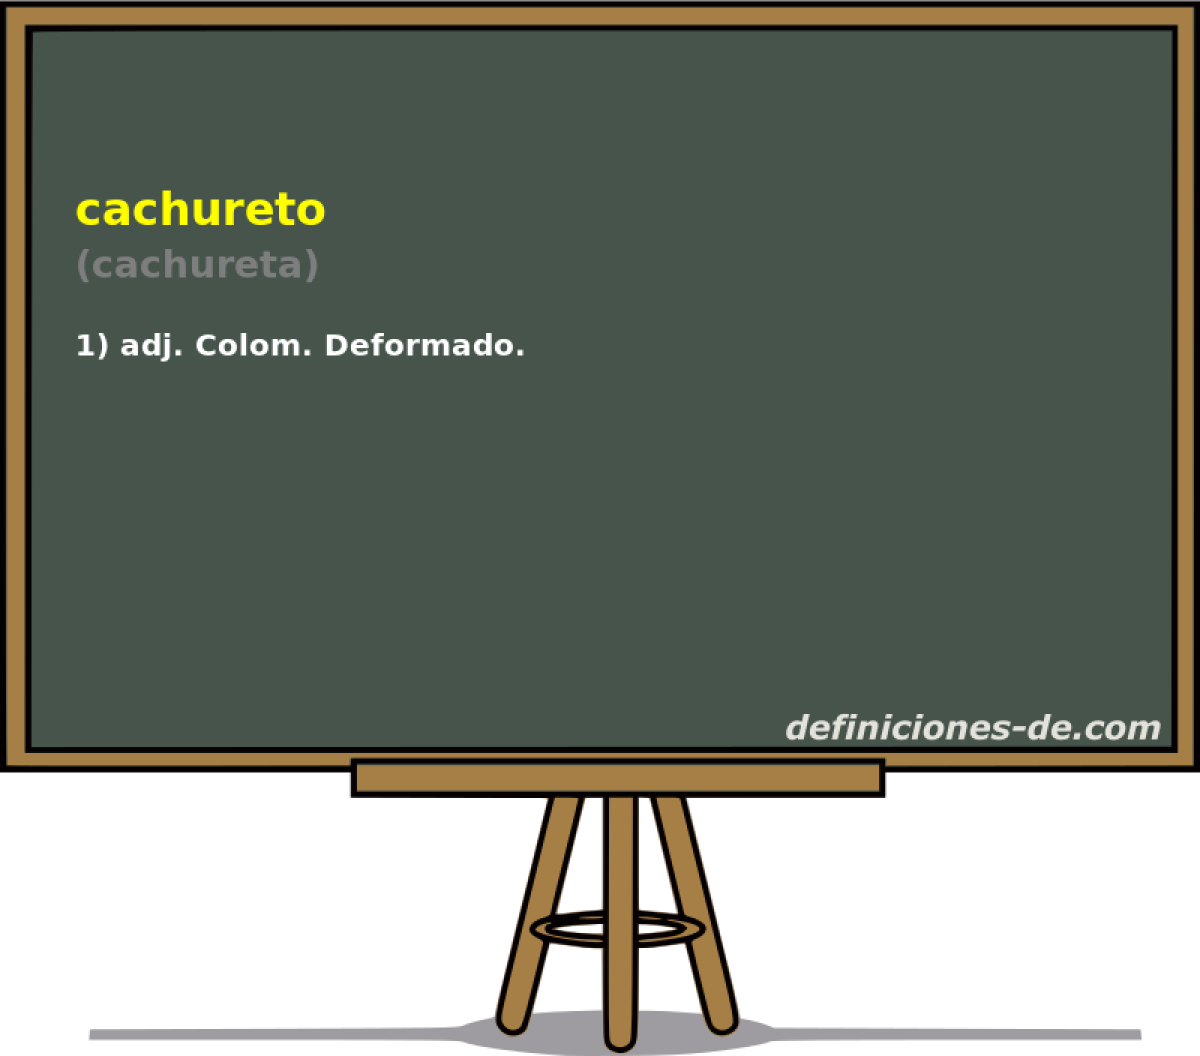 cachureto (cachureta)